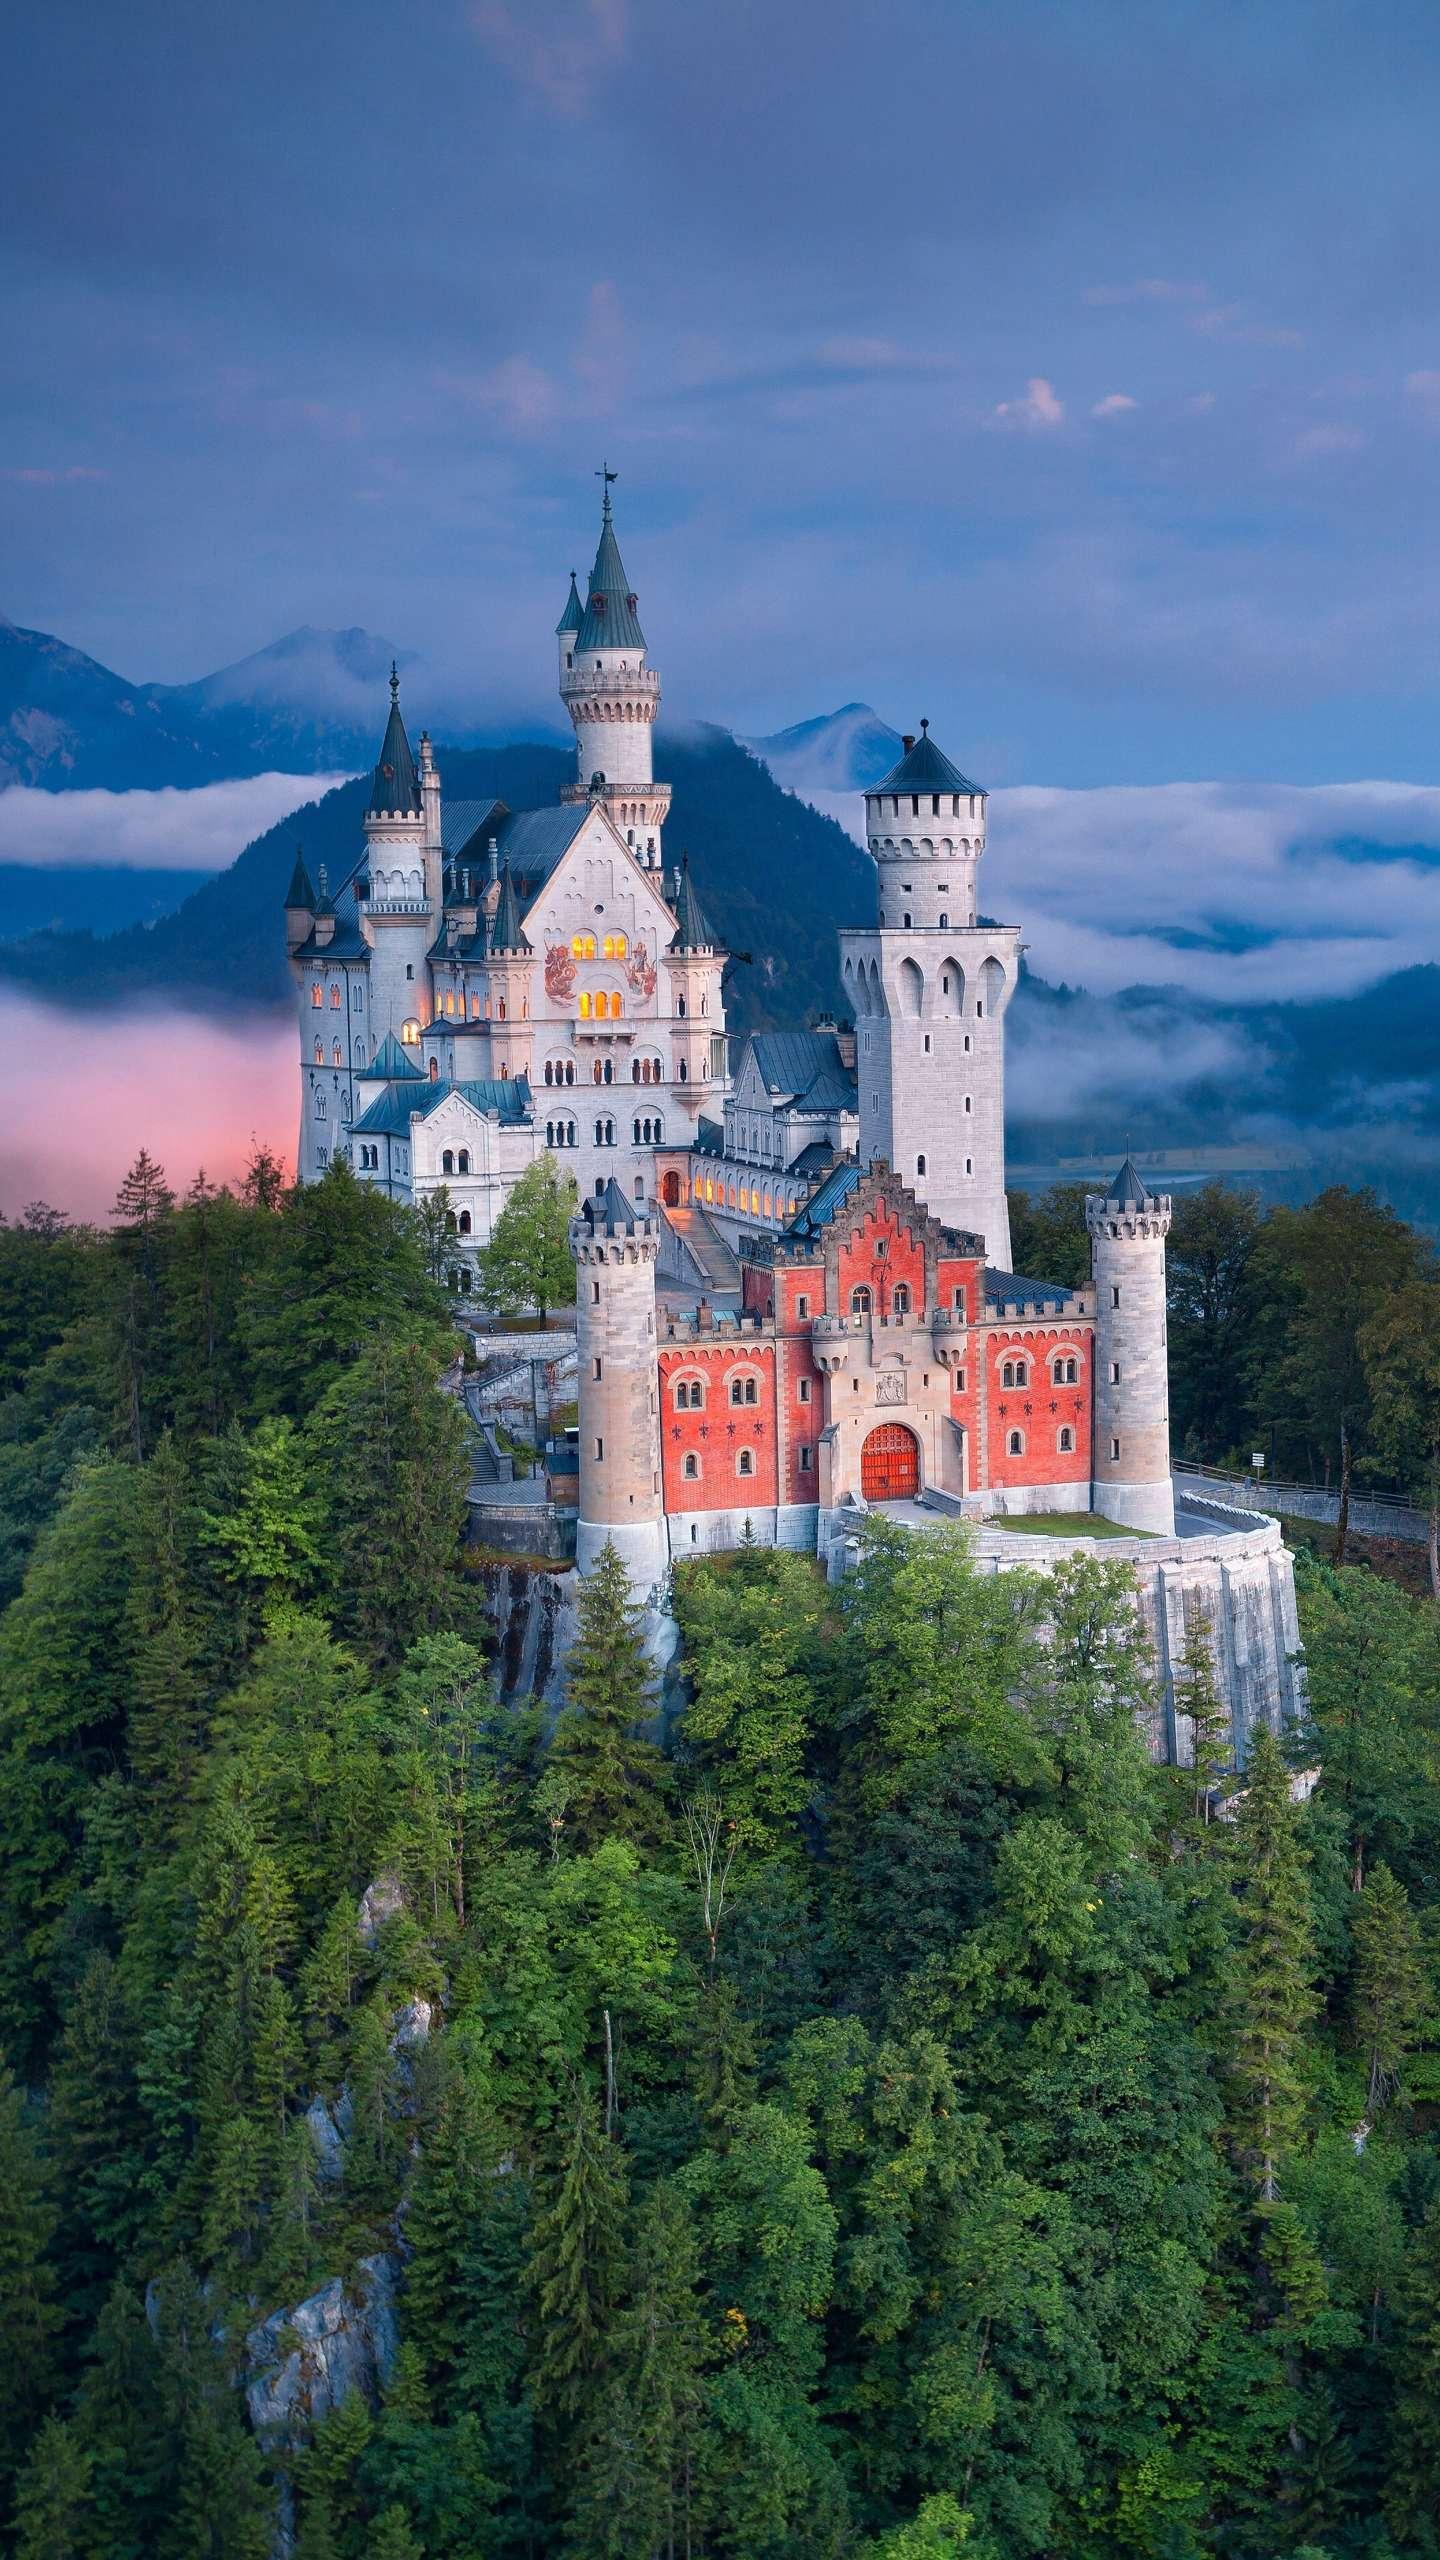 由于是迪斯尼城堡的原型,因此也被称为白雪公主城堡